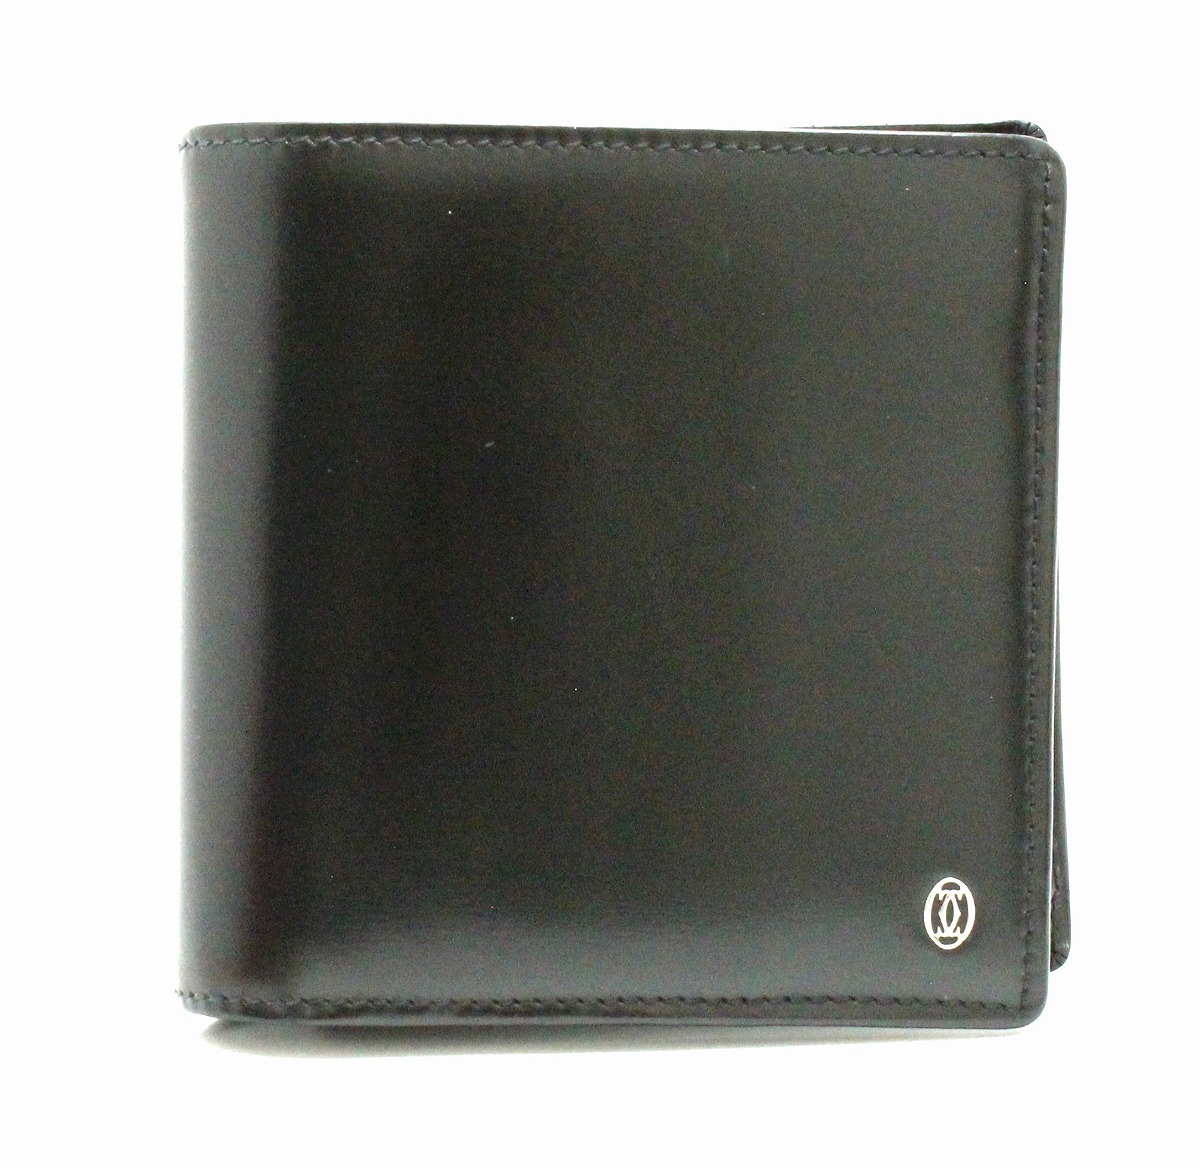 【楽天市場】【財布】Cartier カルティエ パシャライン パシャ ドゥ カルティエ 2つ折財布 カーフレザー 黒 ブラック シルバー金具